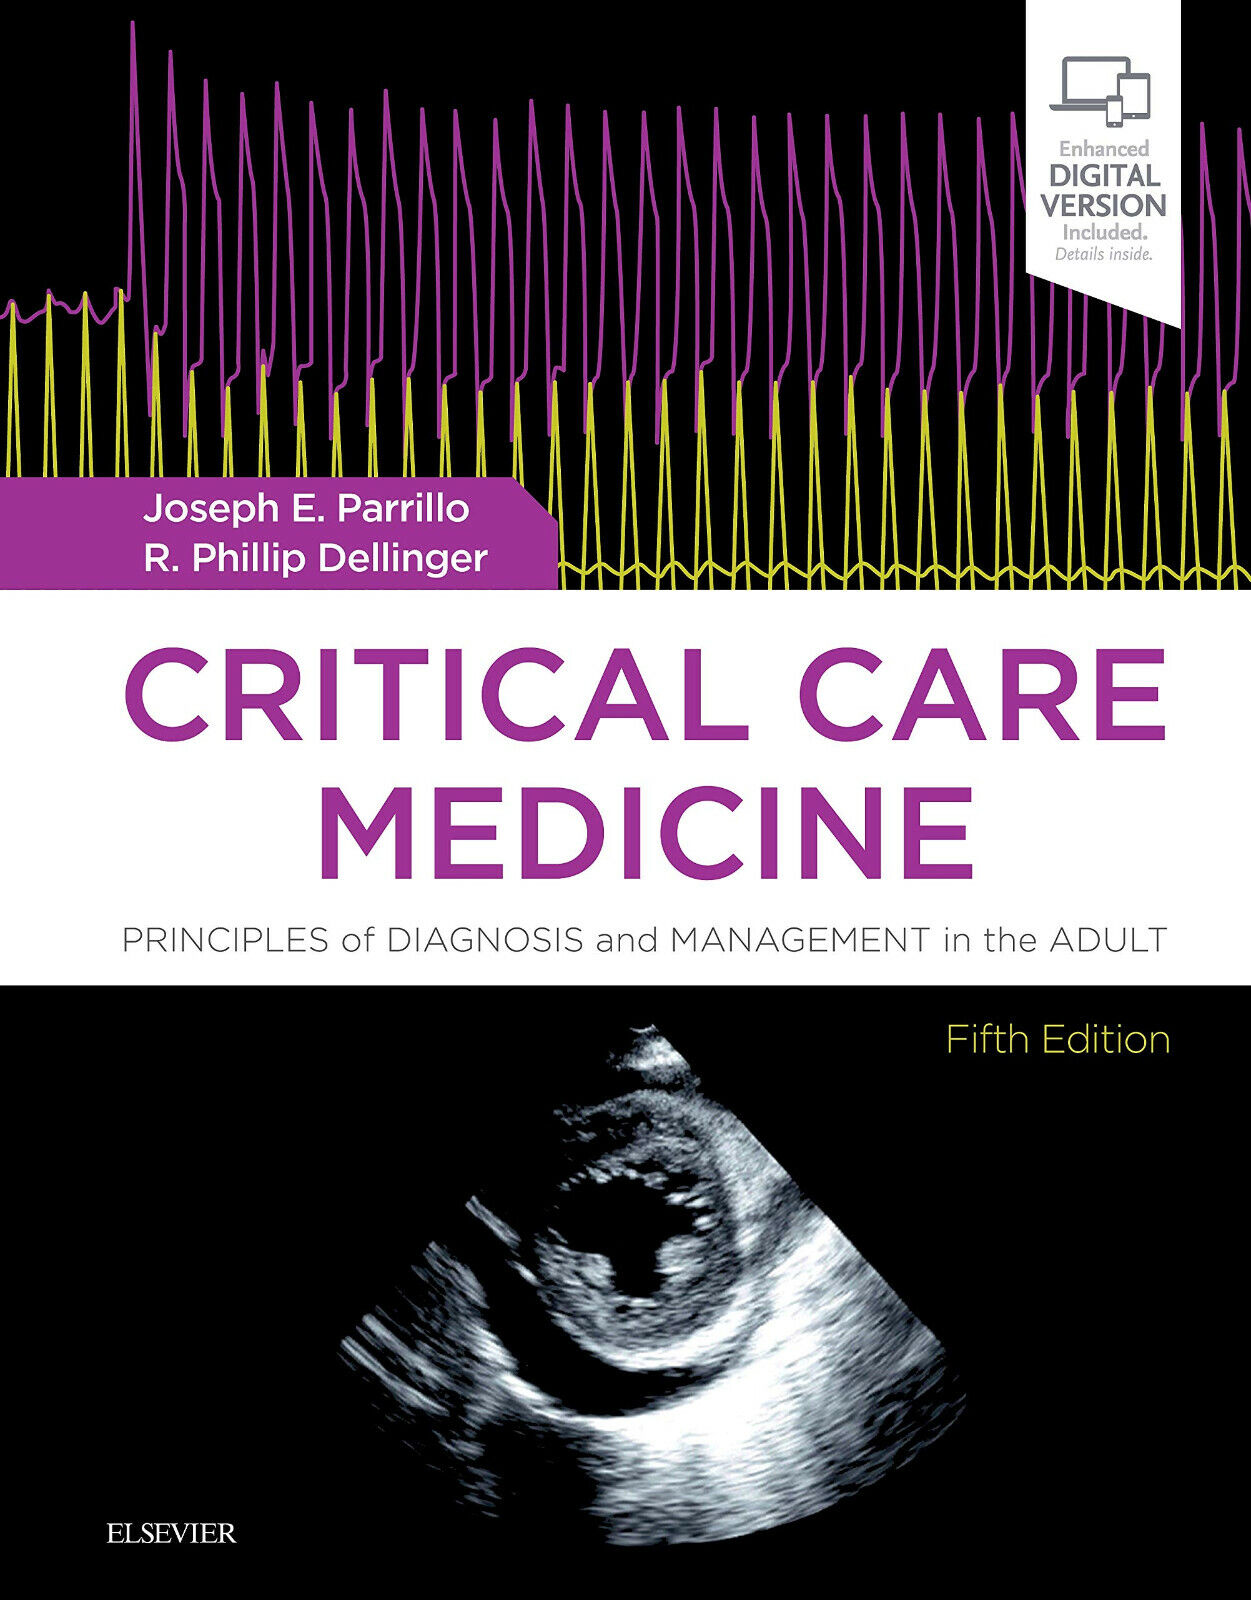 Critical Care Medicine - Joseph E. Parrillo, R. Phillip Dellinger -Elsevier,2019